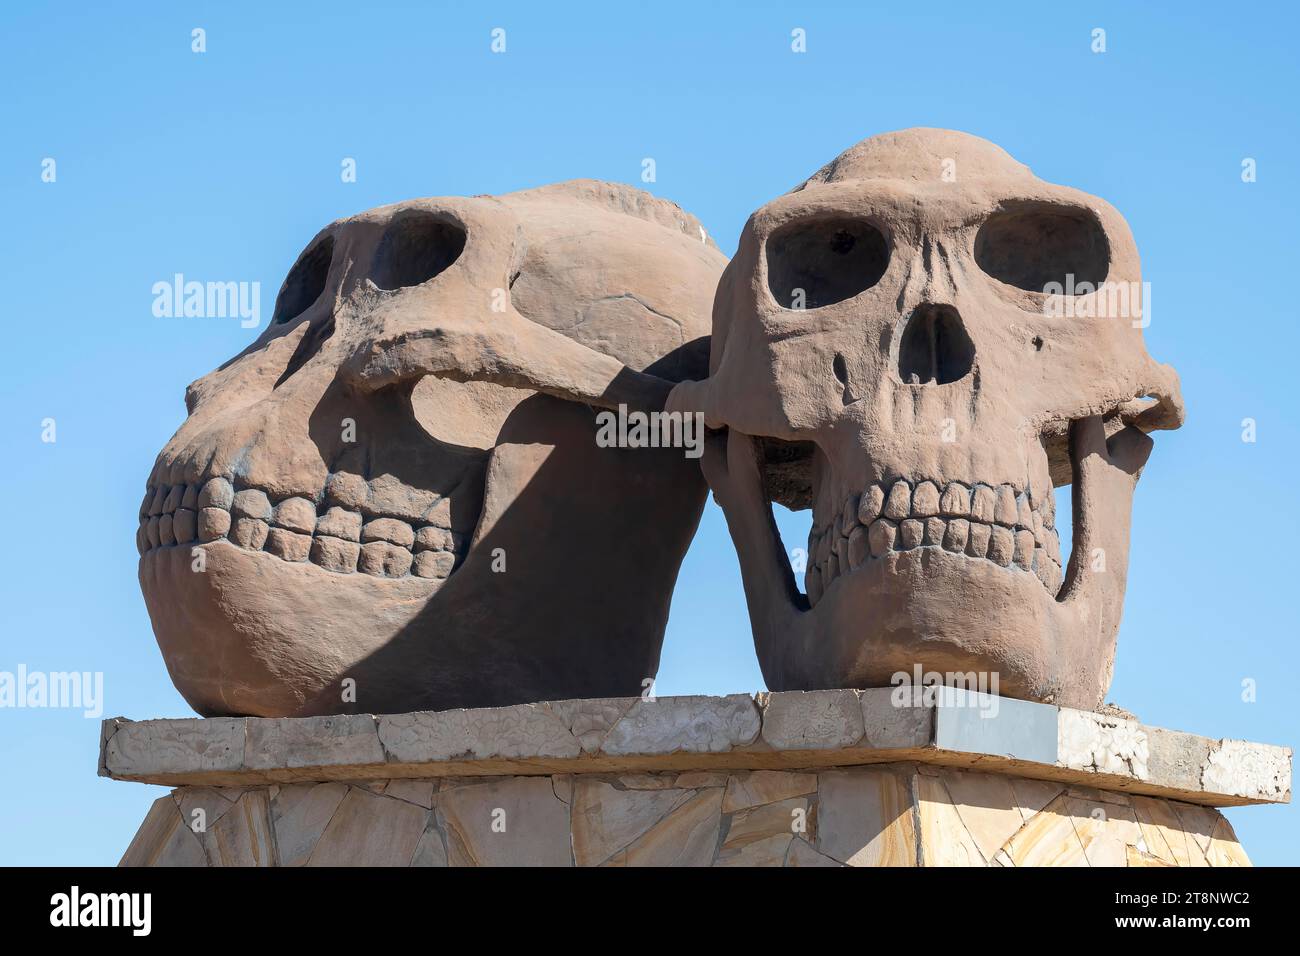 Olduvai gorge, berceau de l'humanité, Paranthropus, Zinjanthropus, Hornoi Habilis, crânes de deux races humaines, zone de conservation de Ngorongoro, Tanzanie Banque D'Images